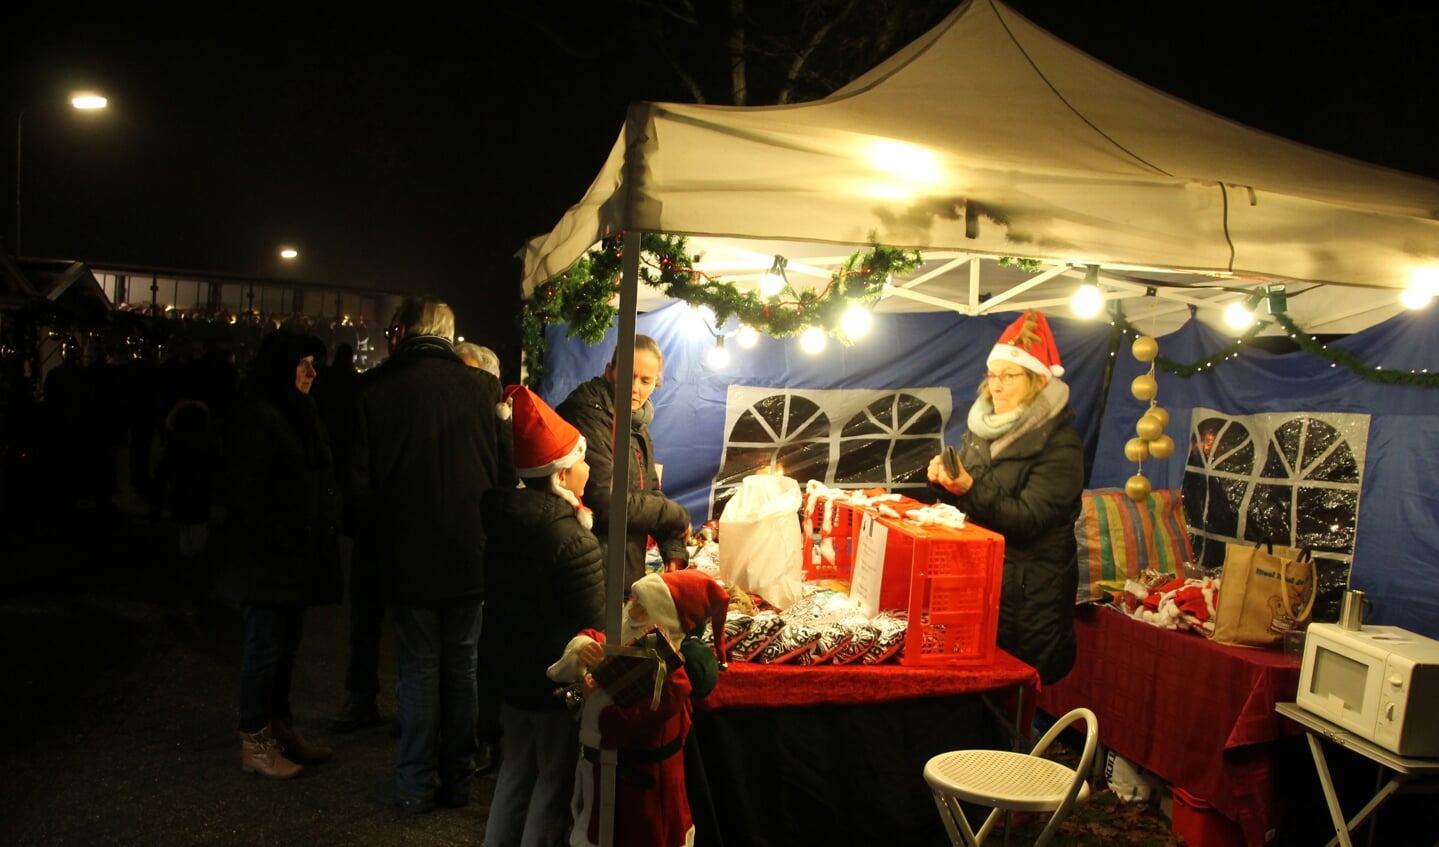 Gezellige stalletjes brengen de bezoekers al echt in kerststemming. Foto: Annekée Cuppers